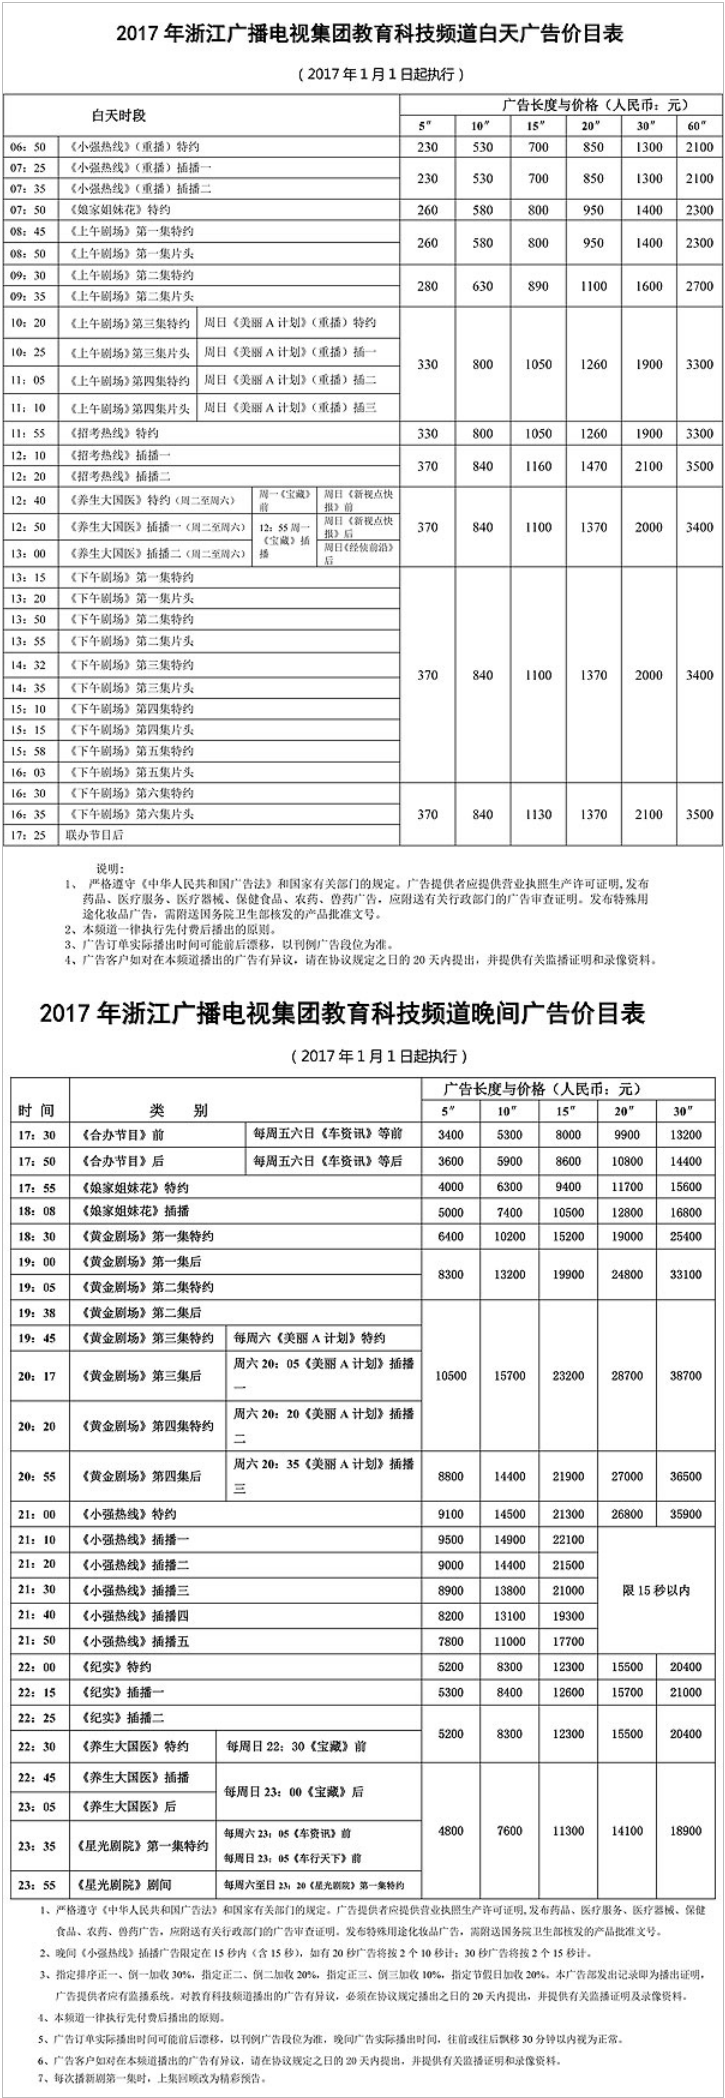 2017浙江电视台浙江卫视 ZTV-1广告报价表.png